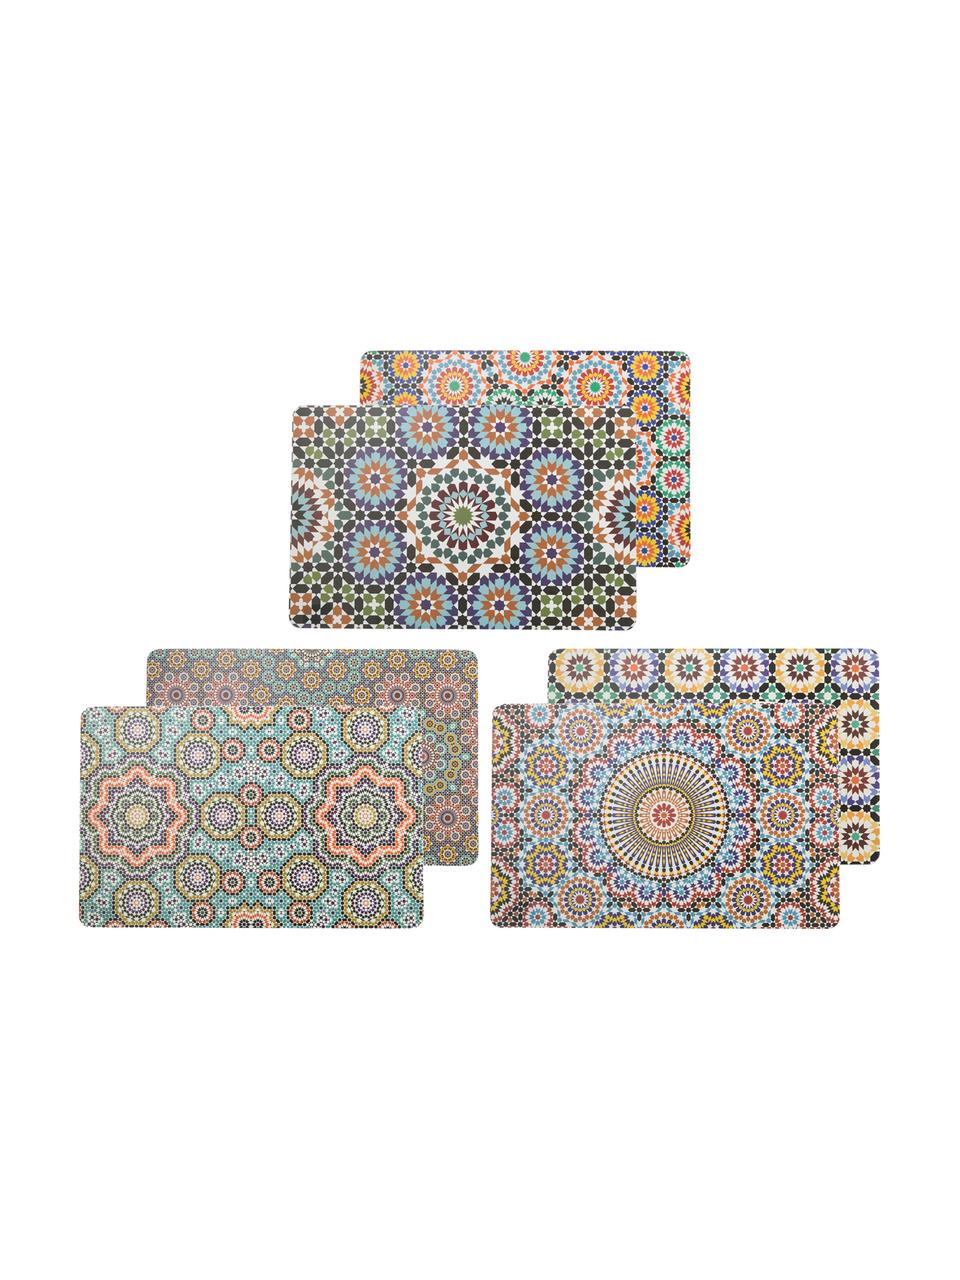 Beidseitig bedruckte Kunststoff Tischsets Marrakesch Doubleface, 6er Set, Kunststoff, Mehrfarbig, B 30 x L 45 cm